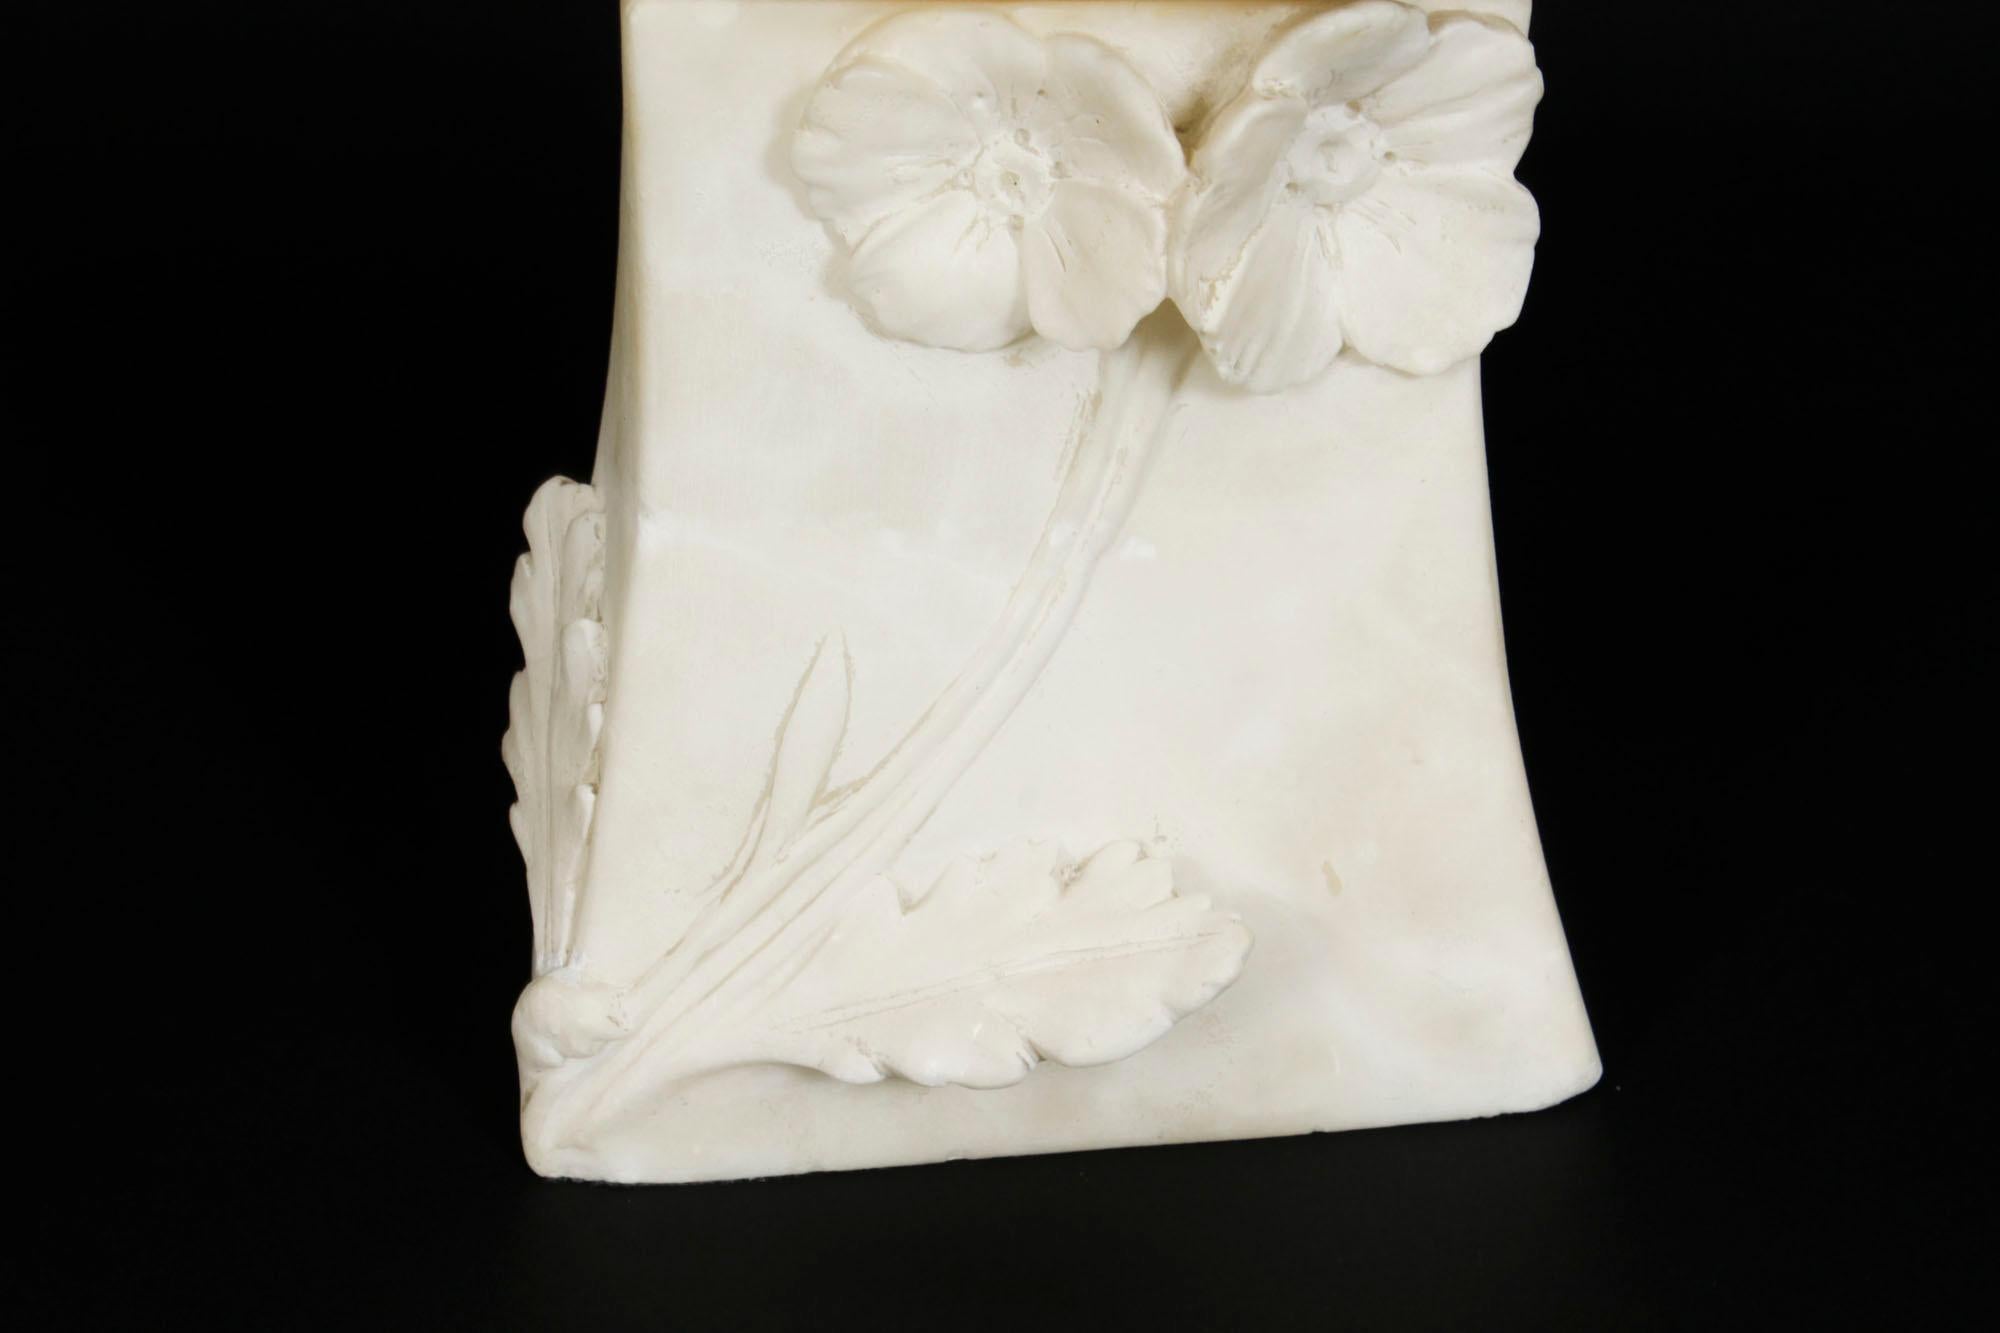 Antique French Art Nouveau Alabaster Portrait Bust 19th C For Sale 2